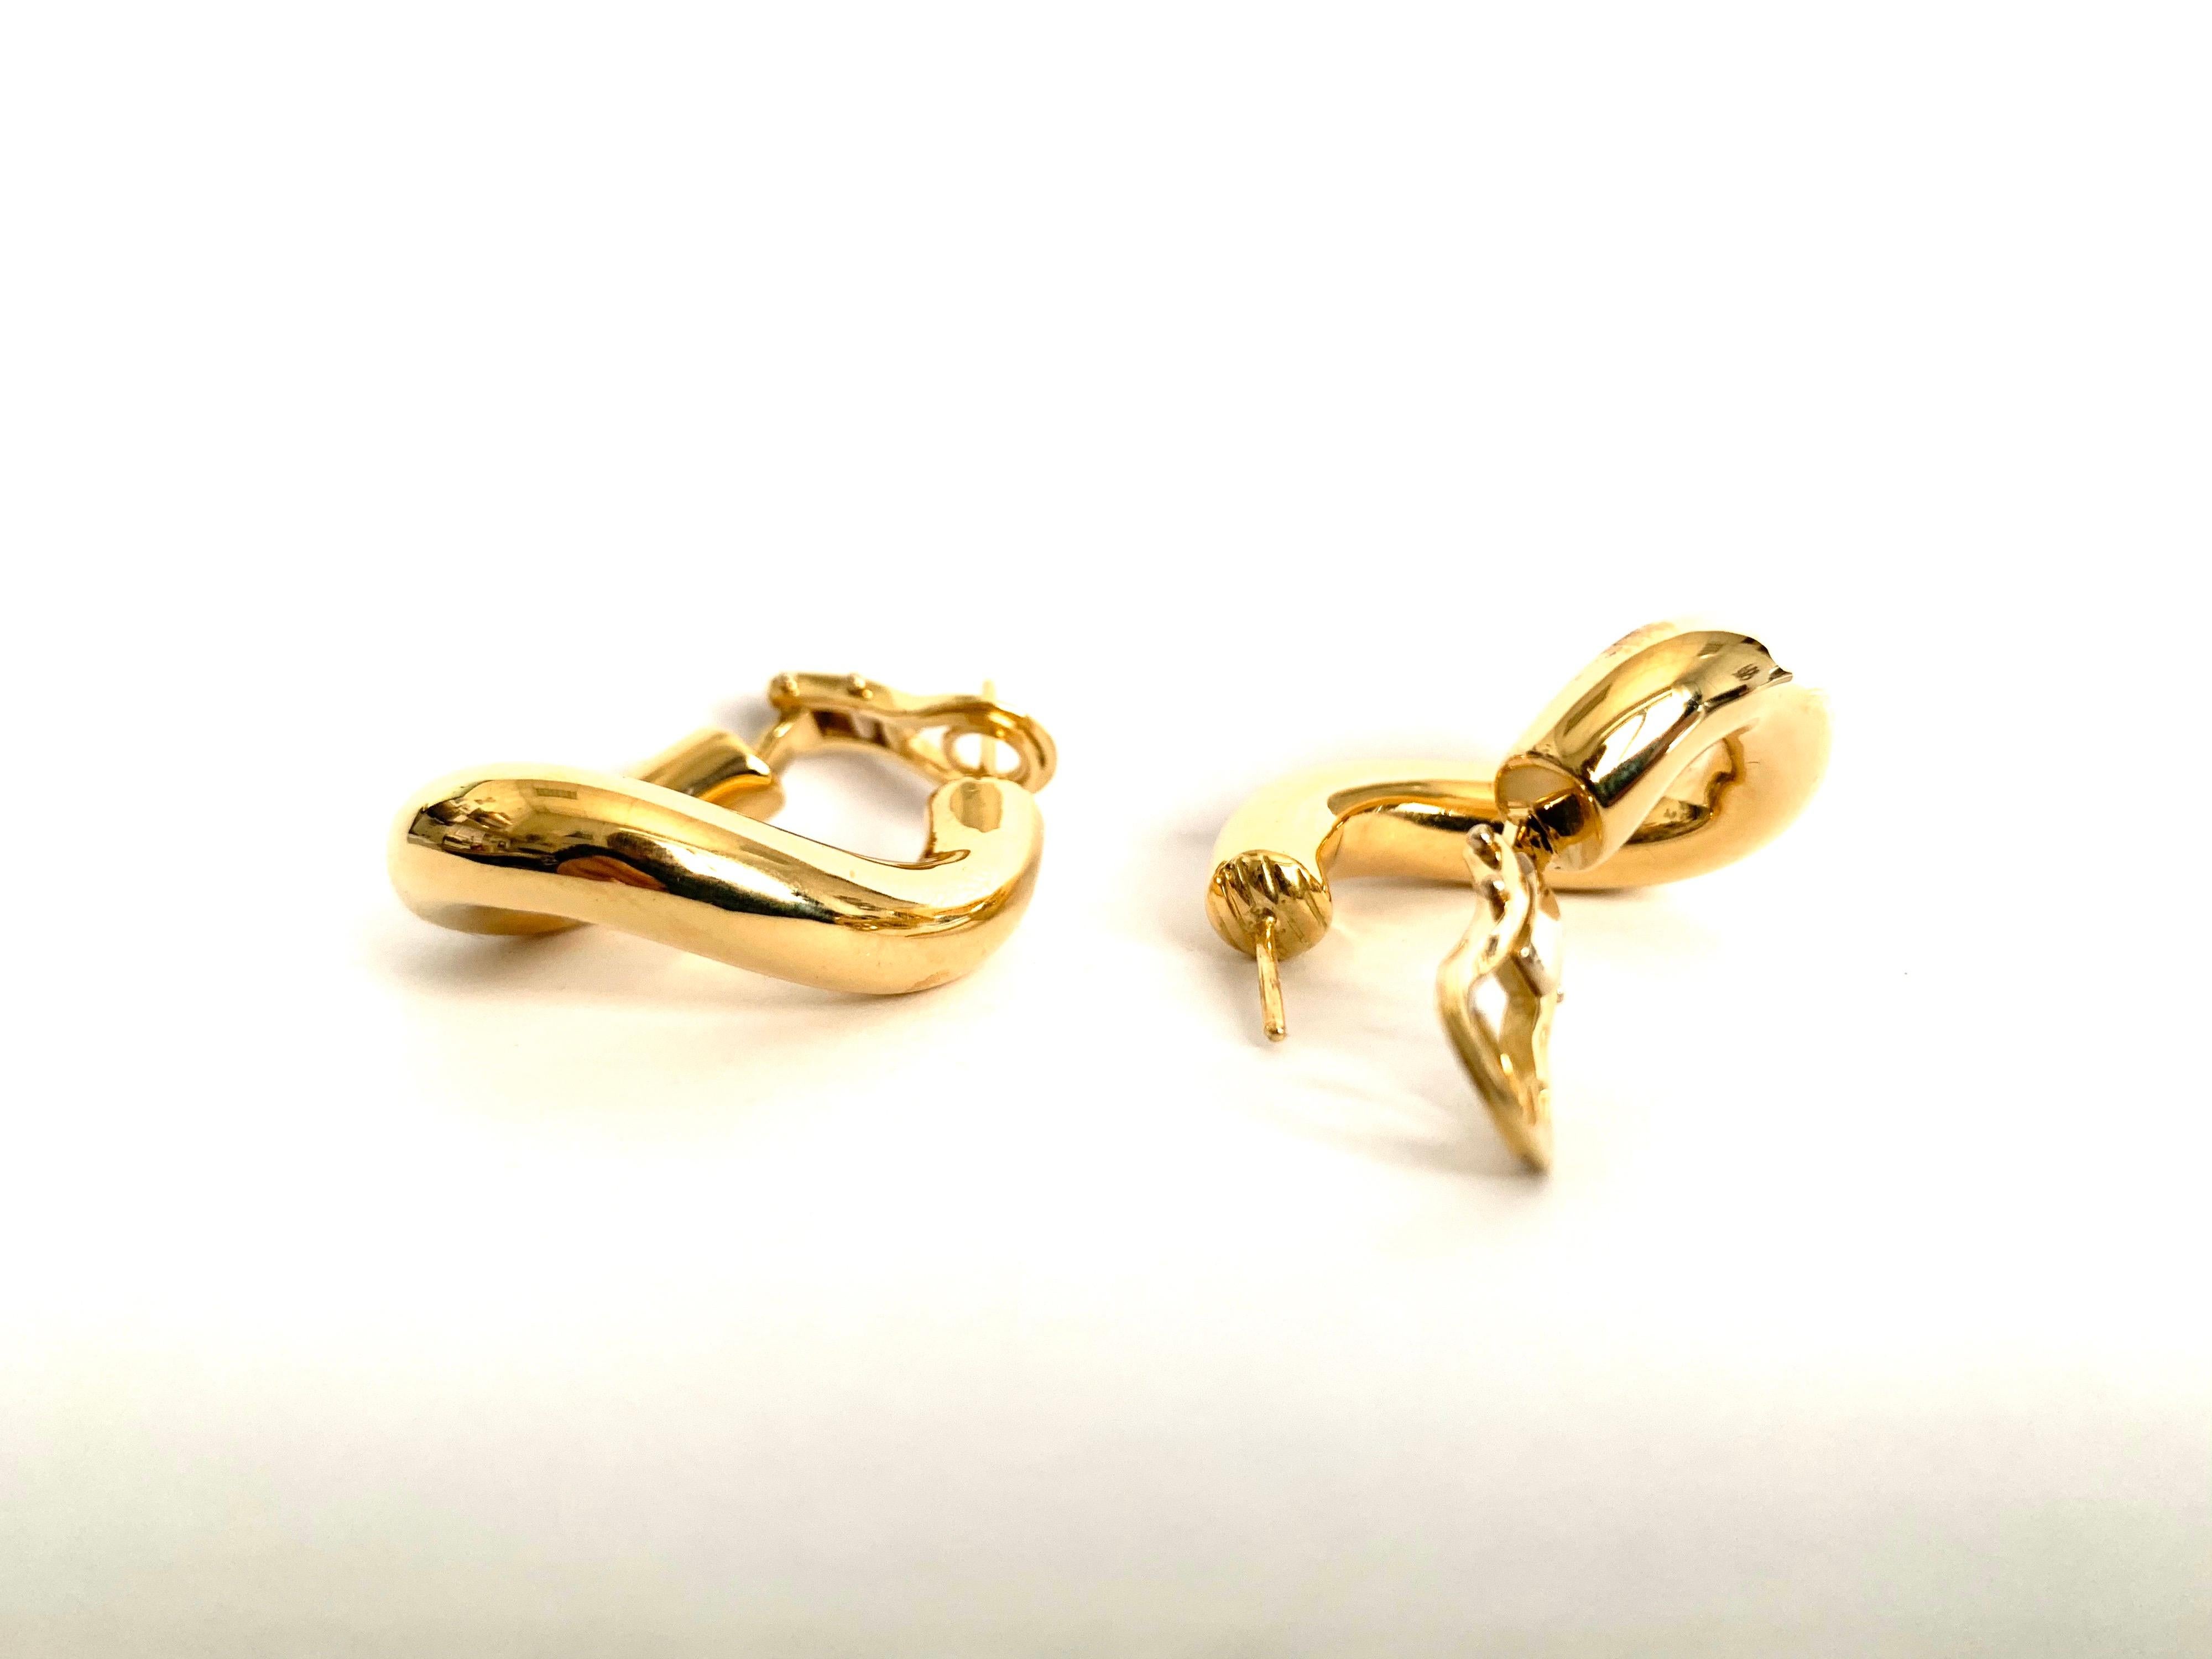 Klassisches Paar Groumette-Ohrringe aus 18 kt Gelbgold 
Dies ist die ikonische Kollektion von Micheletto.

das Gesamtgewicht des Goldes beträgt 14,00

BRIEFMARKE: 10 MI ITALIEN 750

Der vollständige Satz ist verfügbar.
Das Armband kann